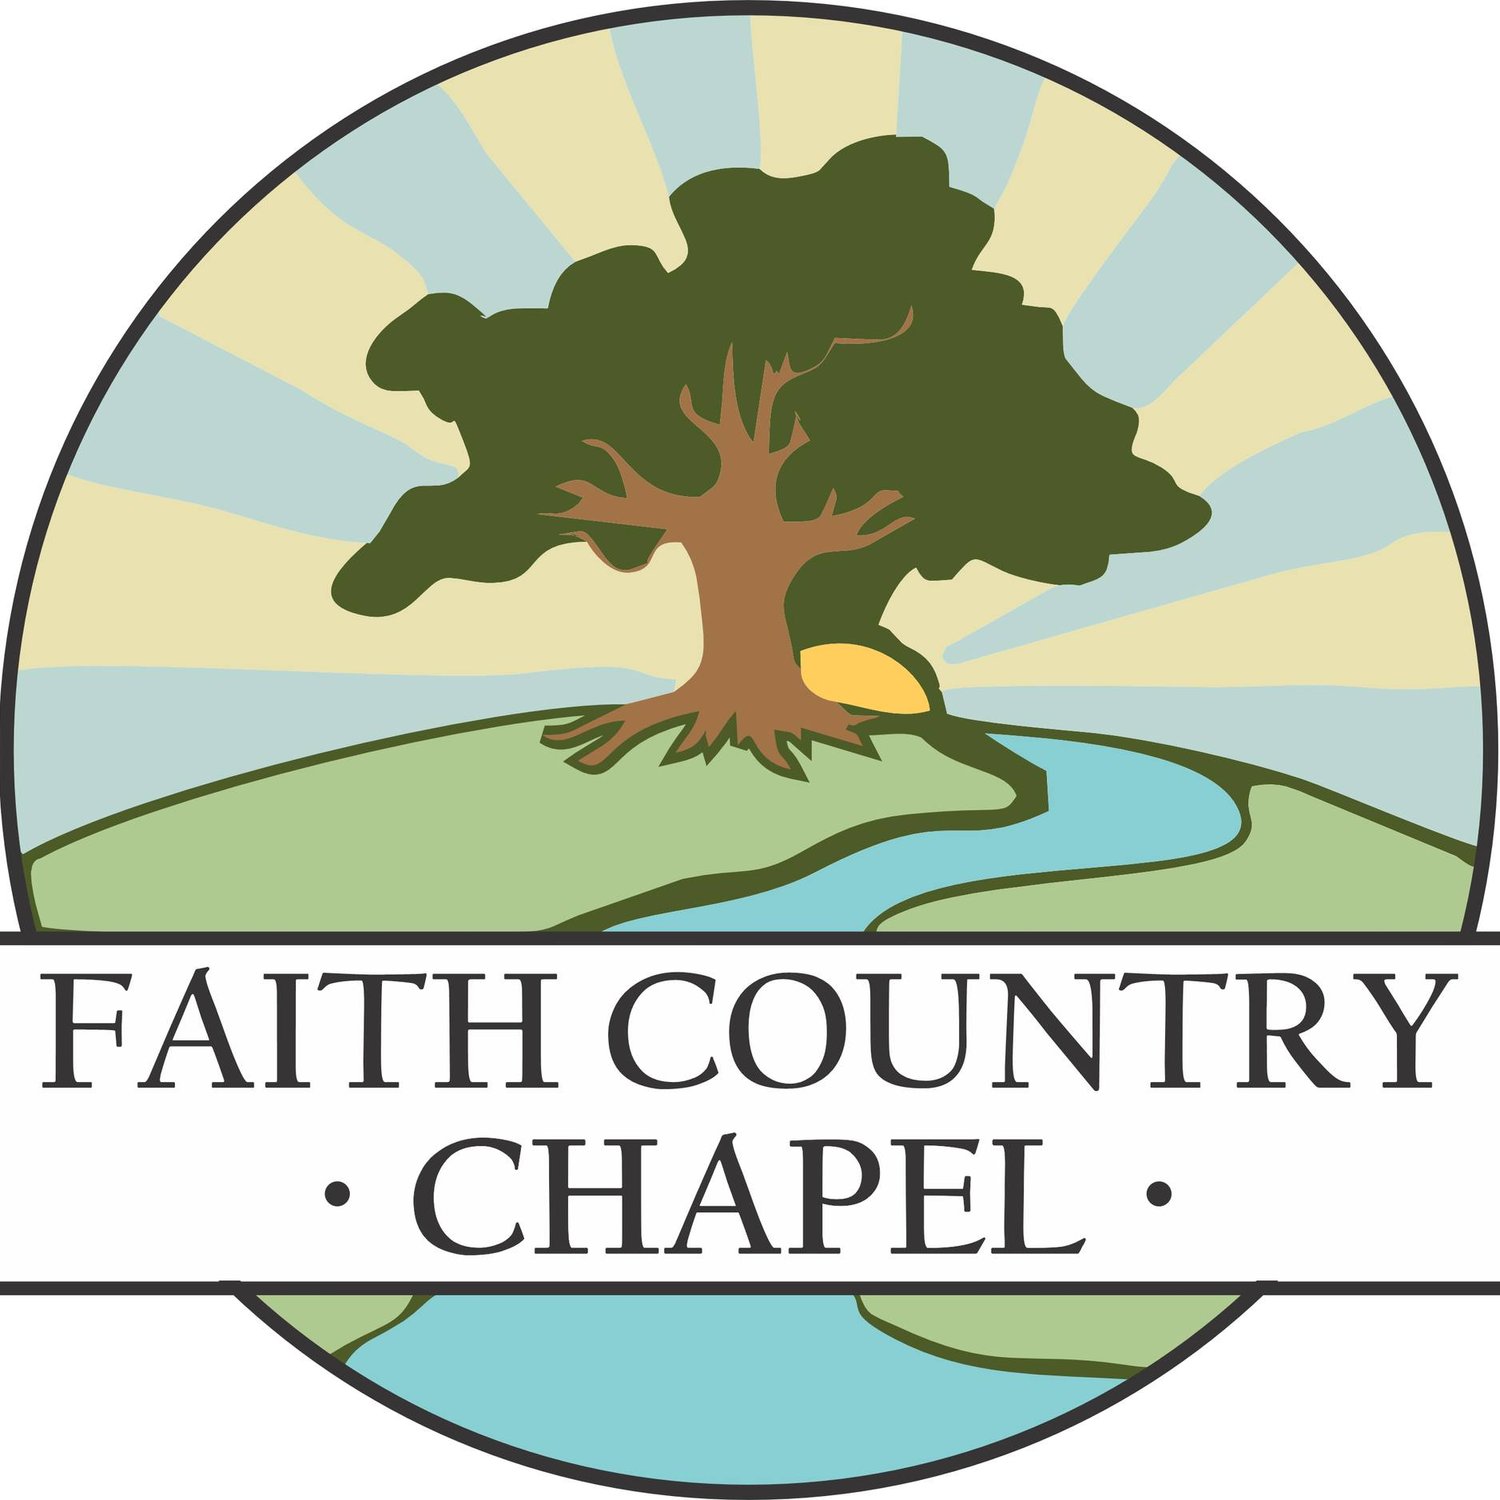 Faith Country Chapel